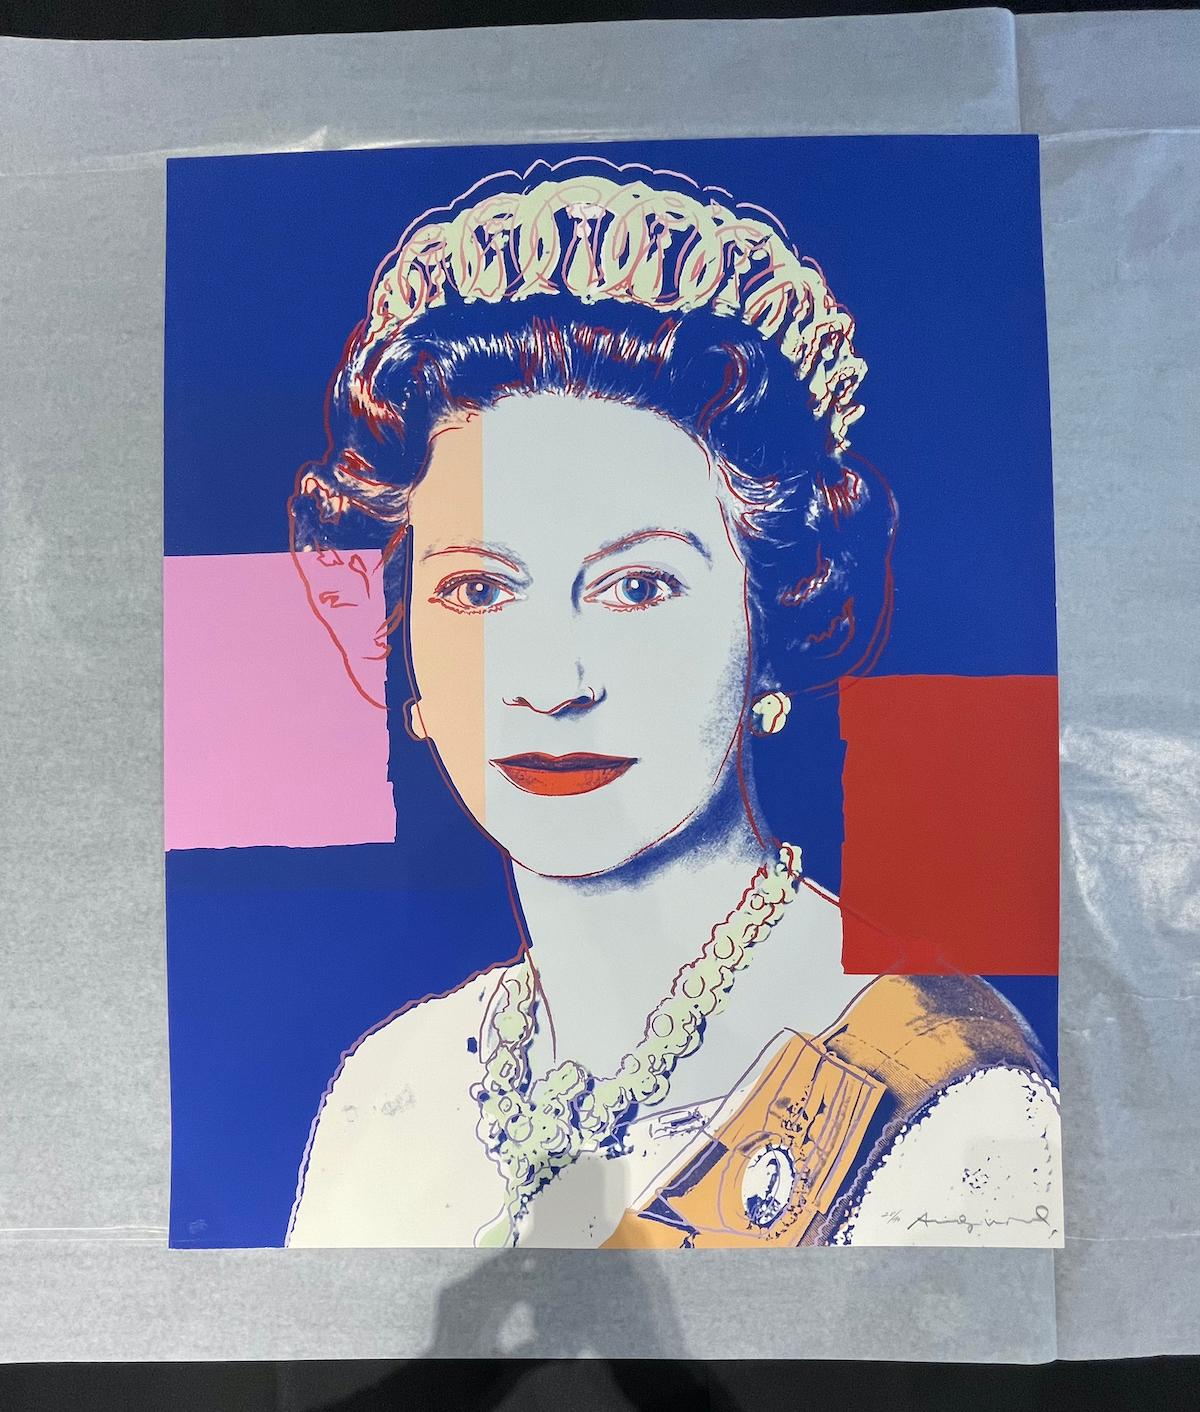 Queen Elizabeth II of the United Kingdom (FS II.337) - Print by Andy Warhol